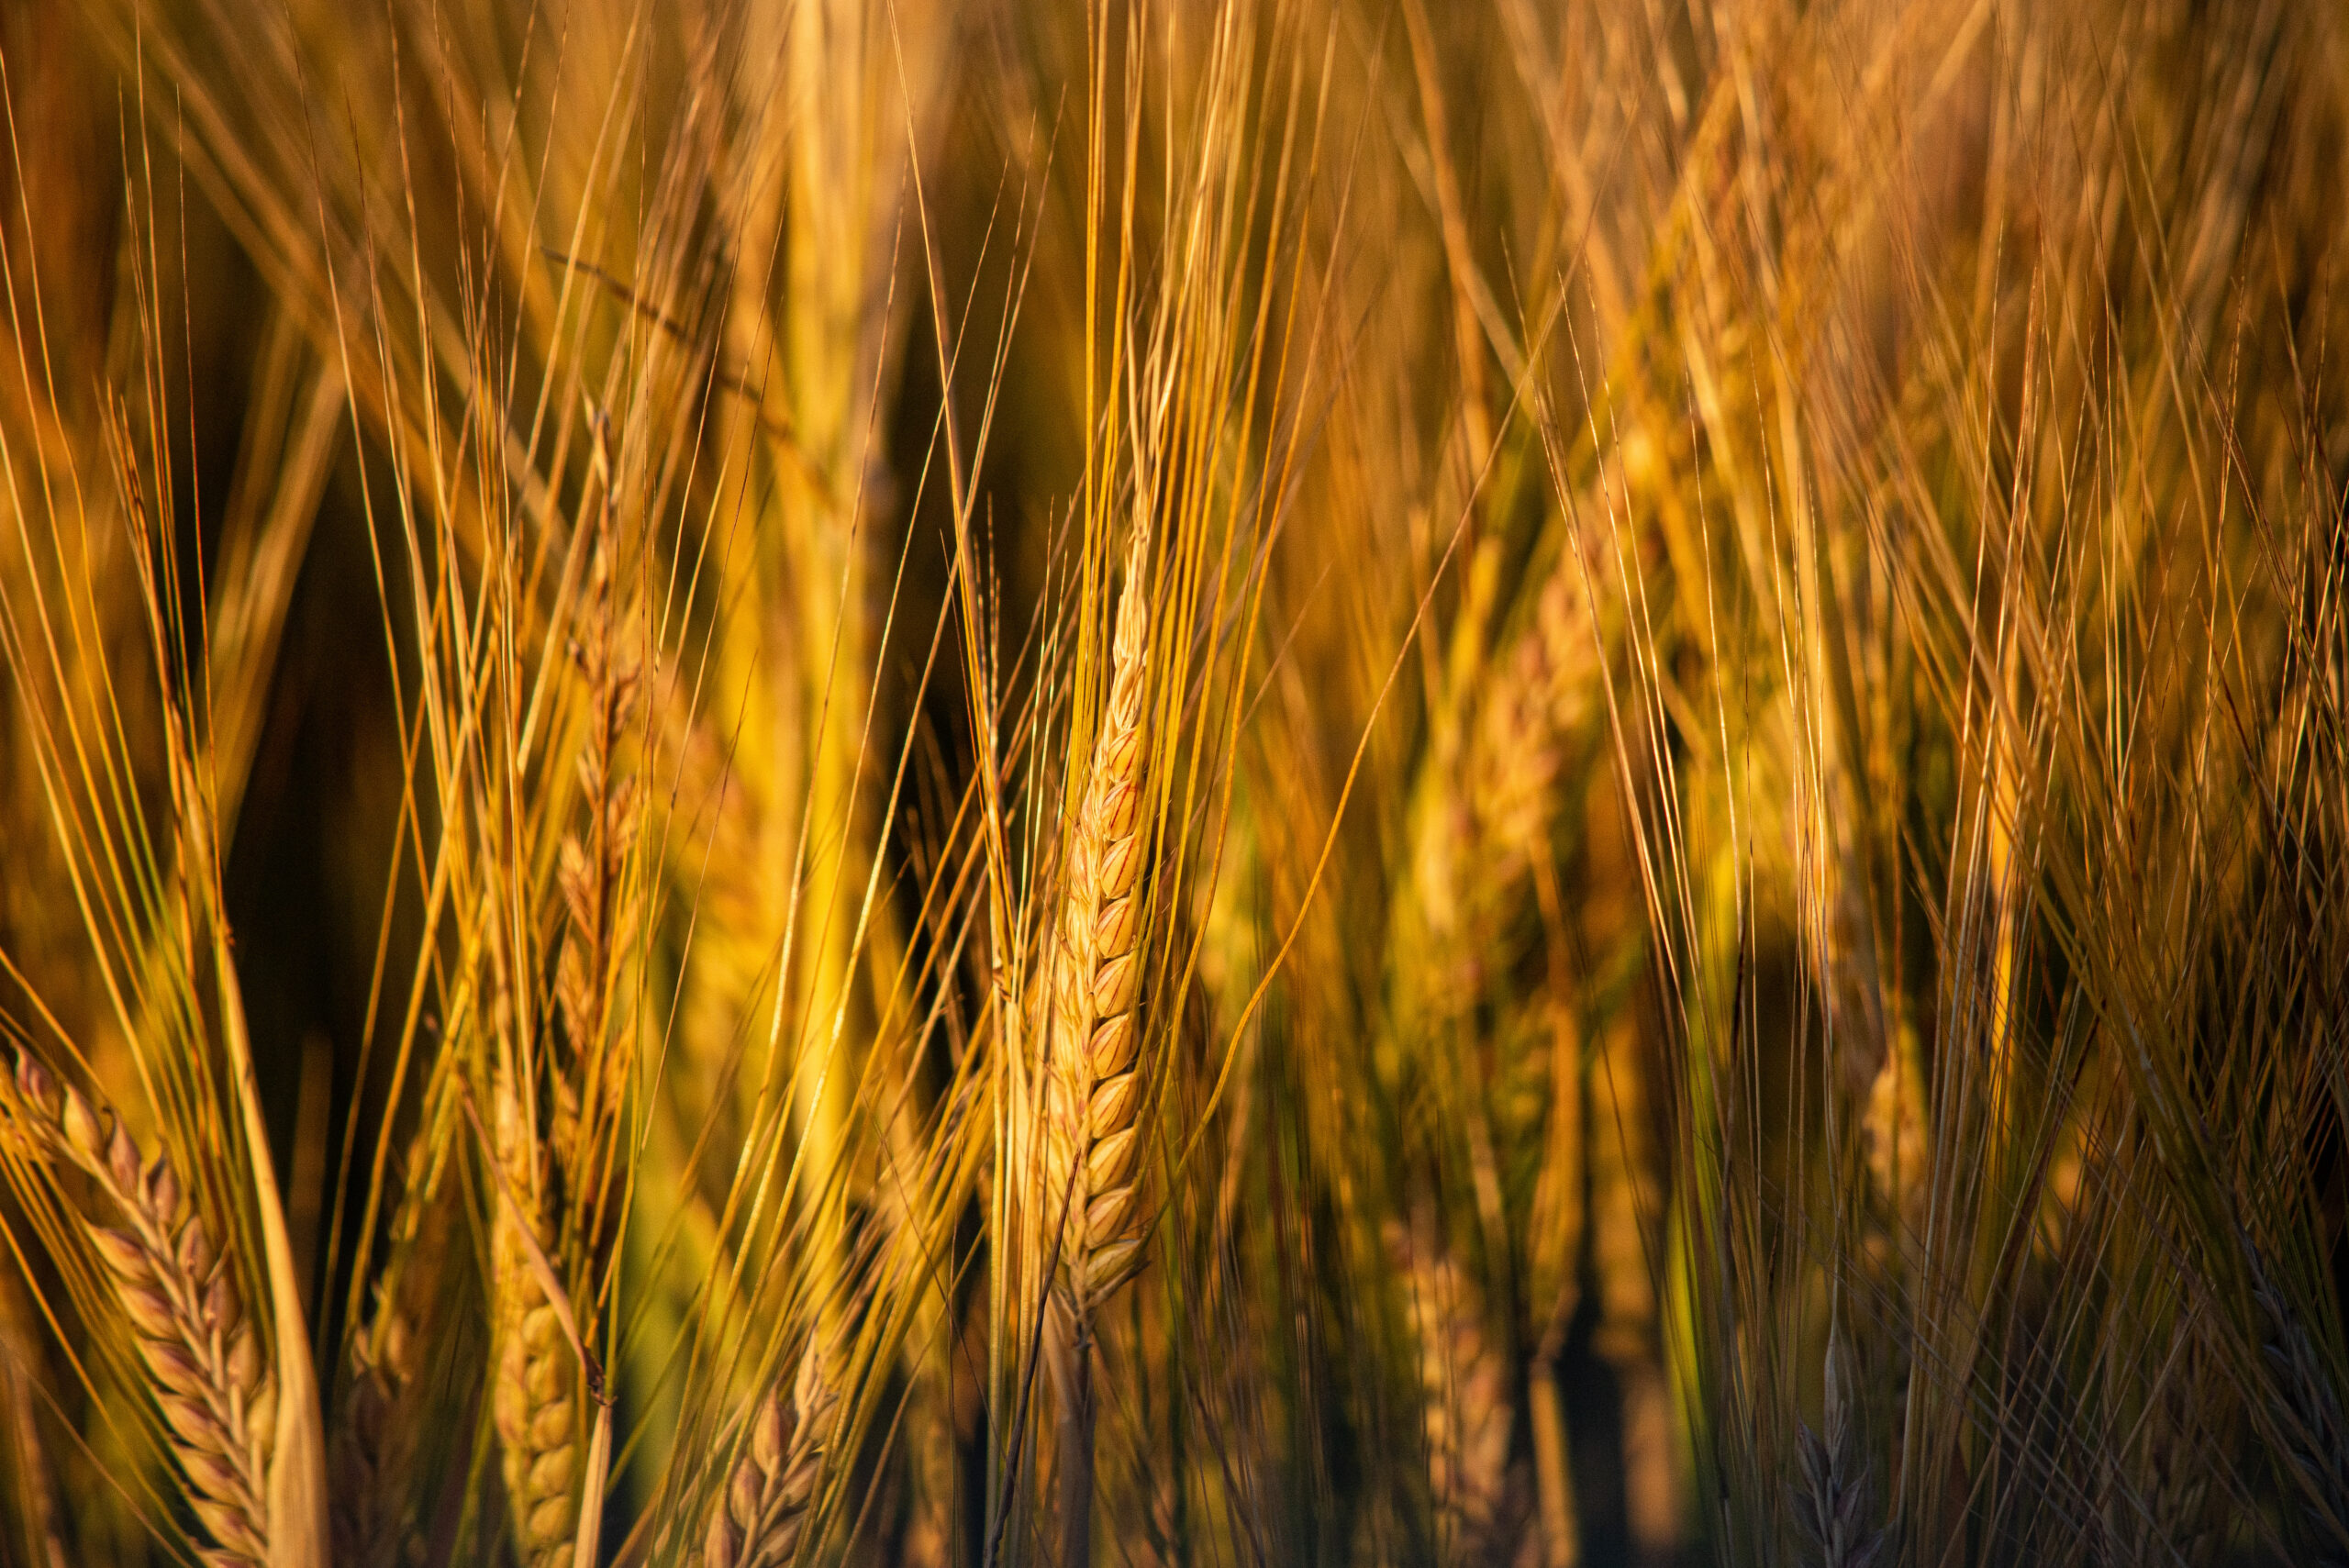 Skagit Grown Barley by Cedarbrook Studio